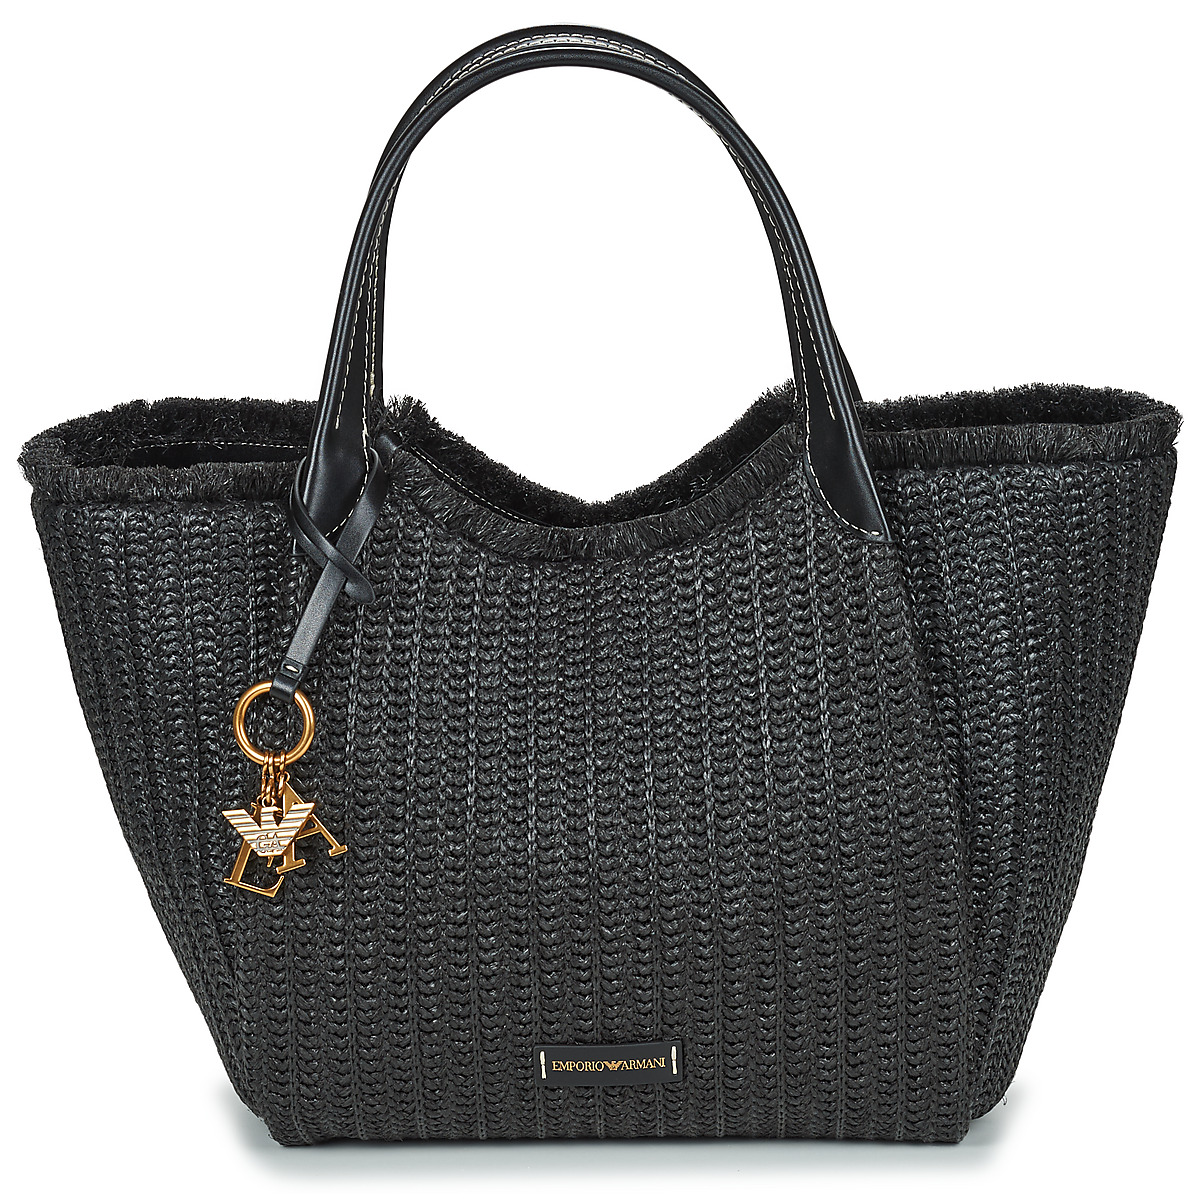 Emporio Armani  Shopping bag Emporio Armani WOMEN'S SHOPPING BAG